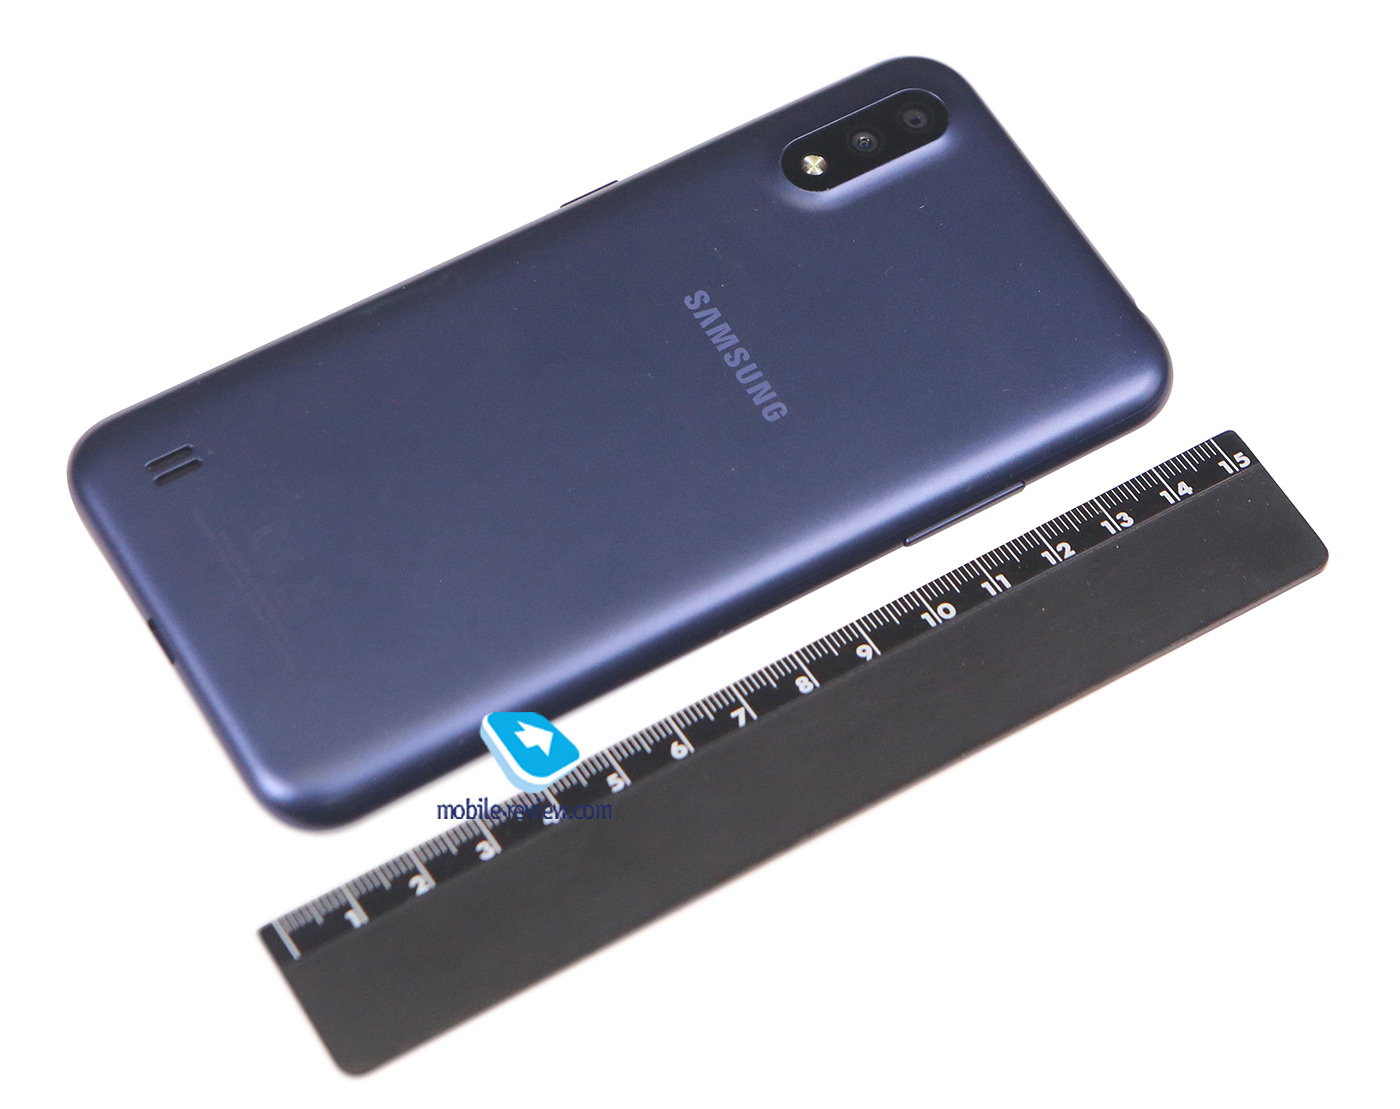    Samsung Galaxy A01 (SM-A015F/DS)